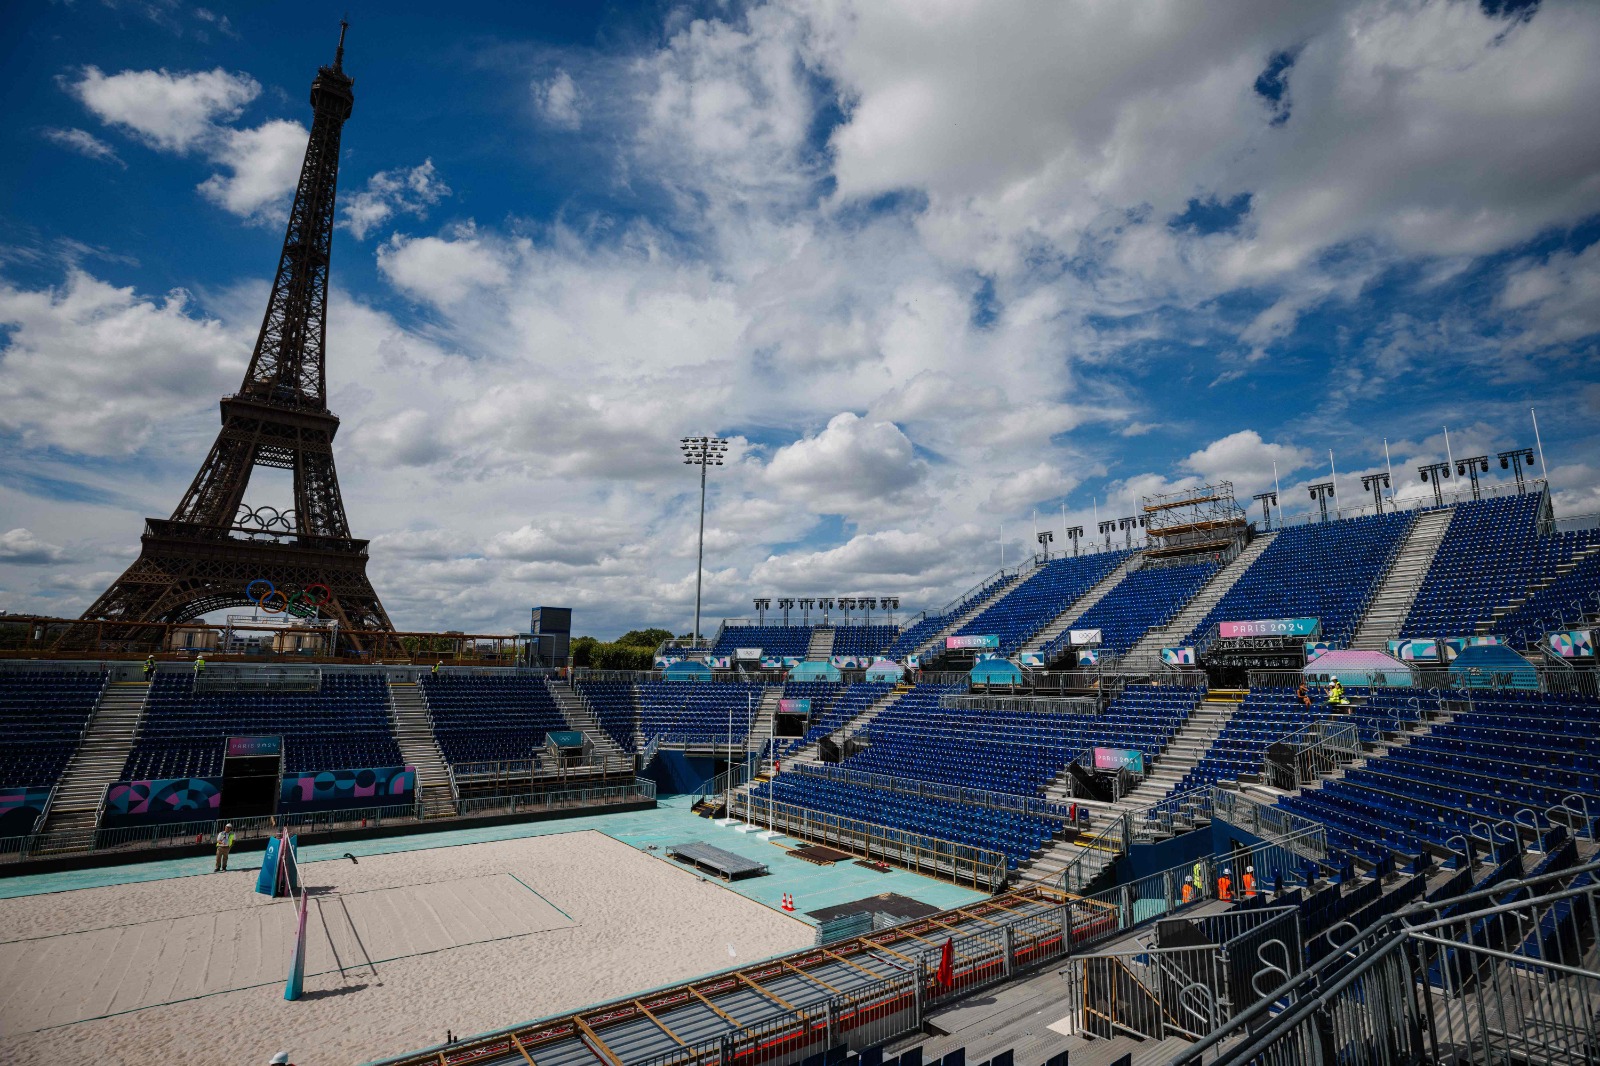 Vista da Eiffel Tower Stadium, arena do vôlei de praia em Paris 2024